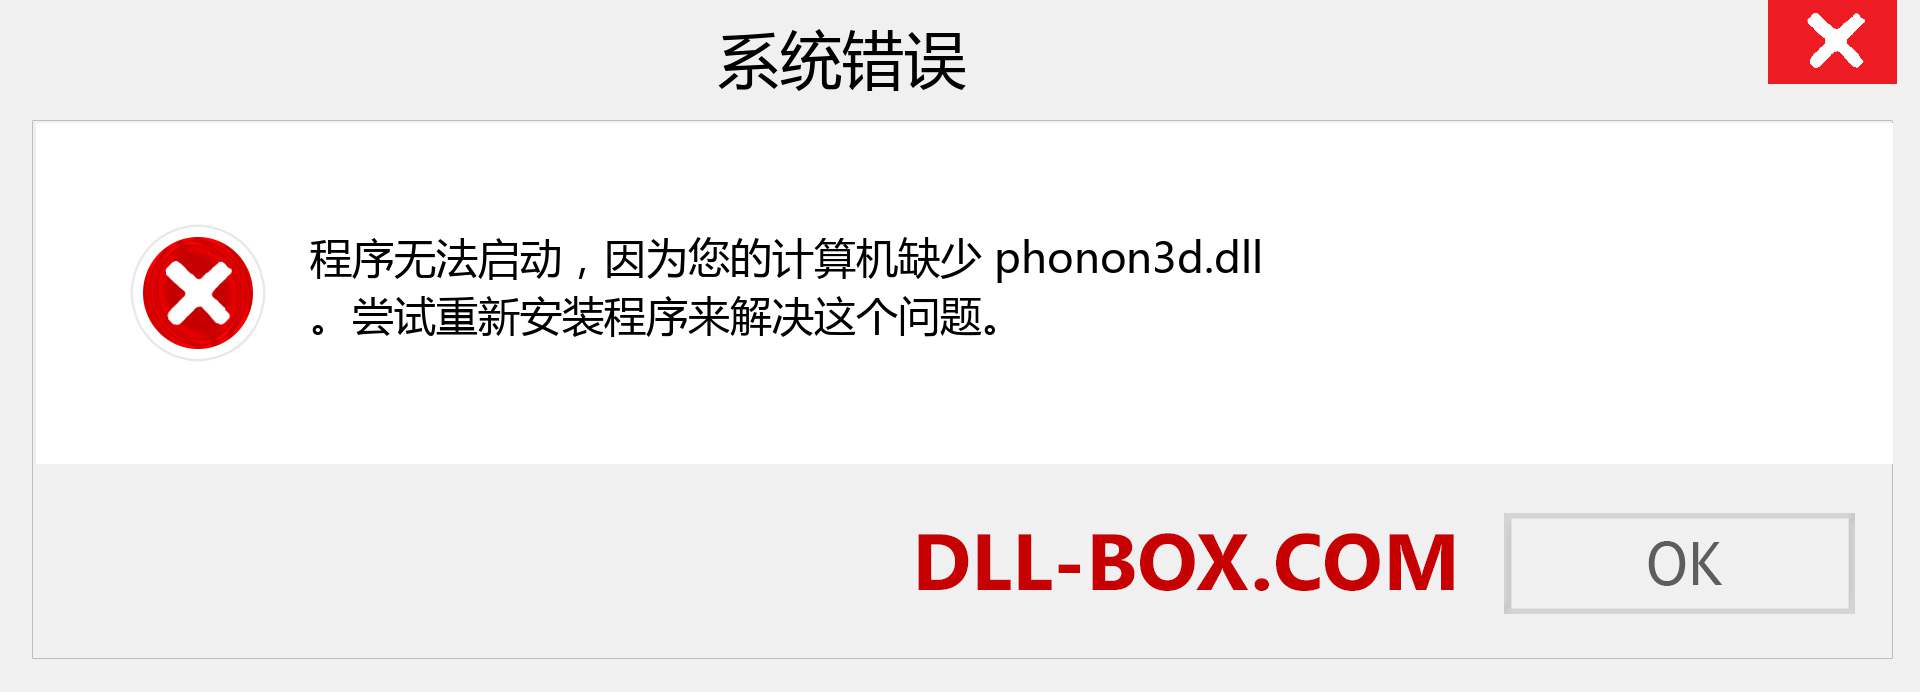 phonon3d.dll 文件丢失？。 适用于 Windows 7、8、10 的下载 - 修复 Windows、照片、图像上的 phonon3d dll 丢失错误